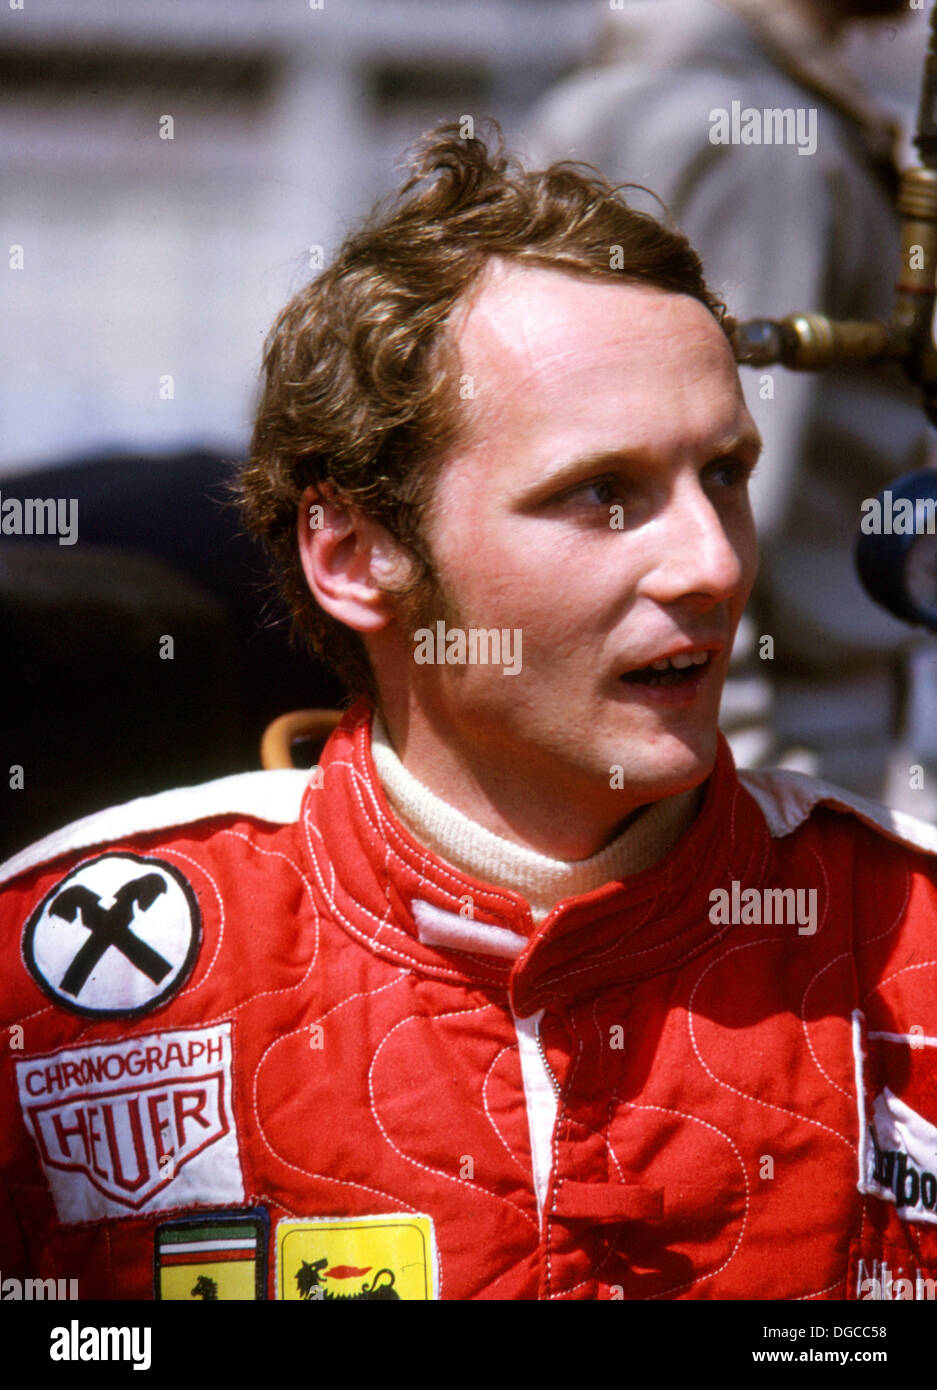 Niki Lauda, österreichischer Rennfahrer, Formel 1 World Championship 3 Mal  im Jahr 1975, 1977 & 1984 gewonnen hat. Fotografiert im Jahr 1975  Stockfotografie - Alamy